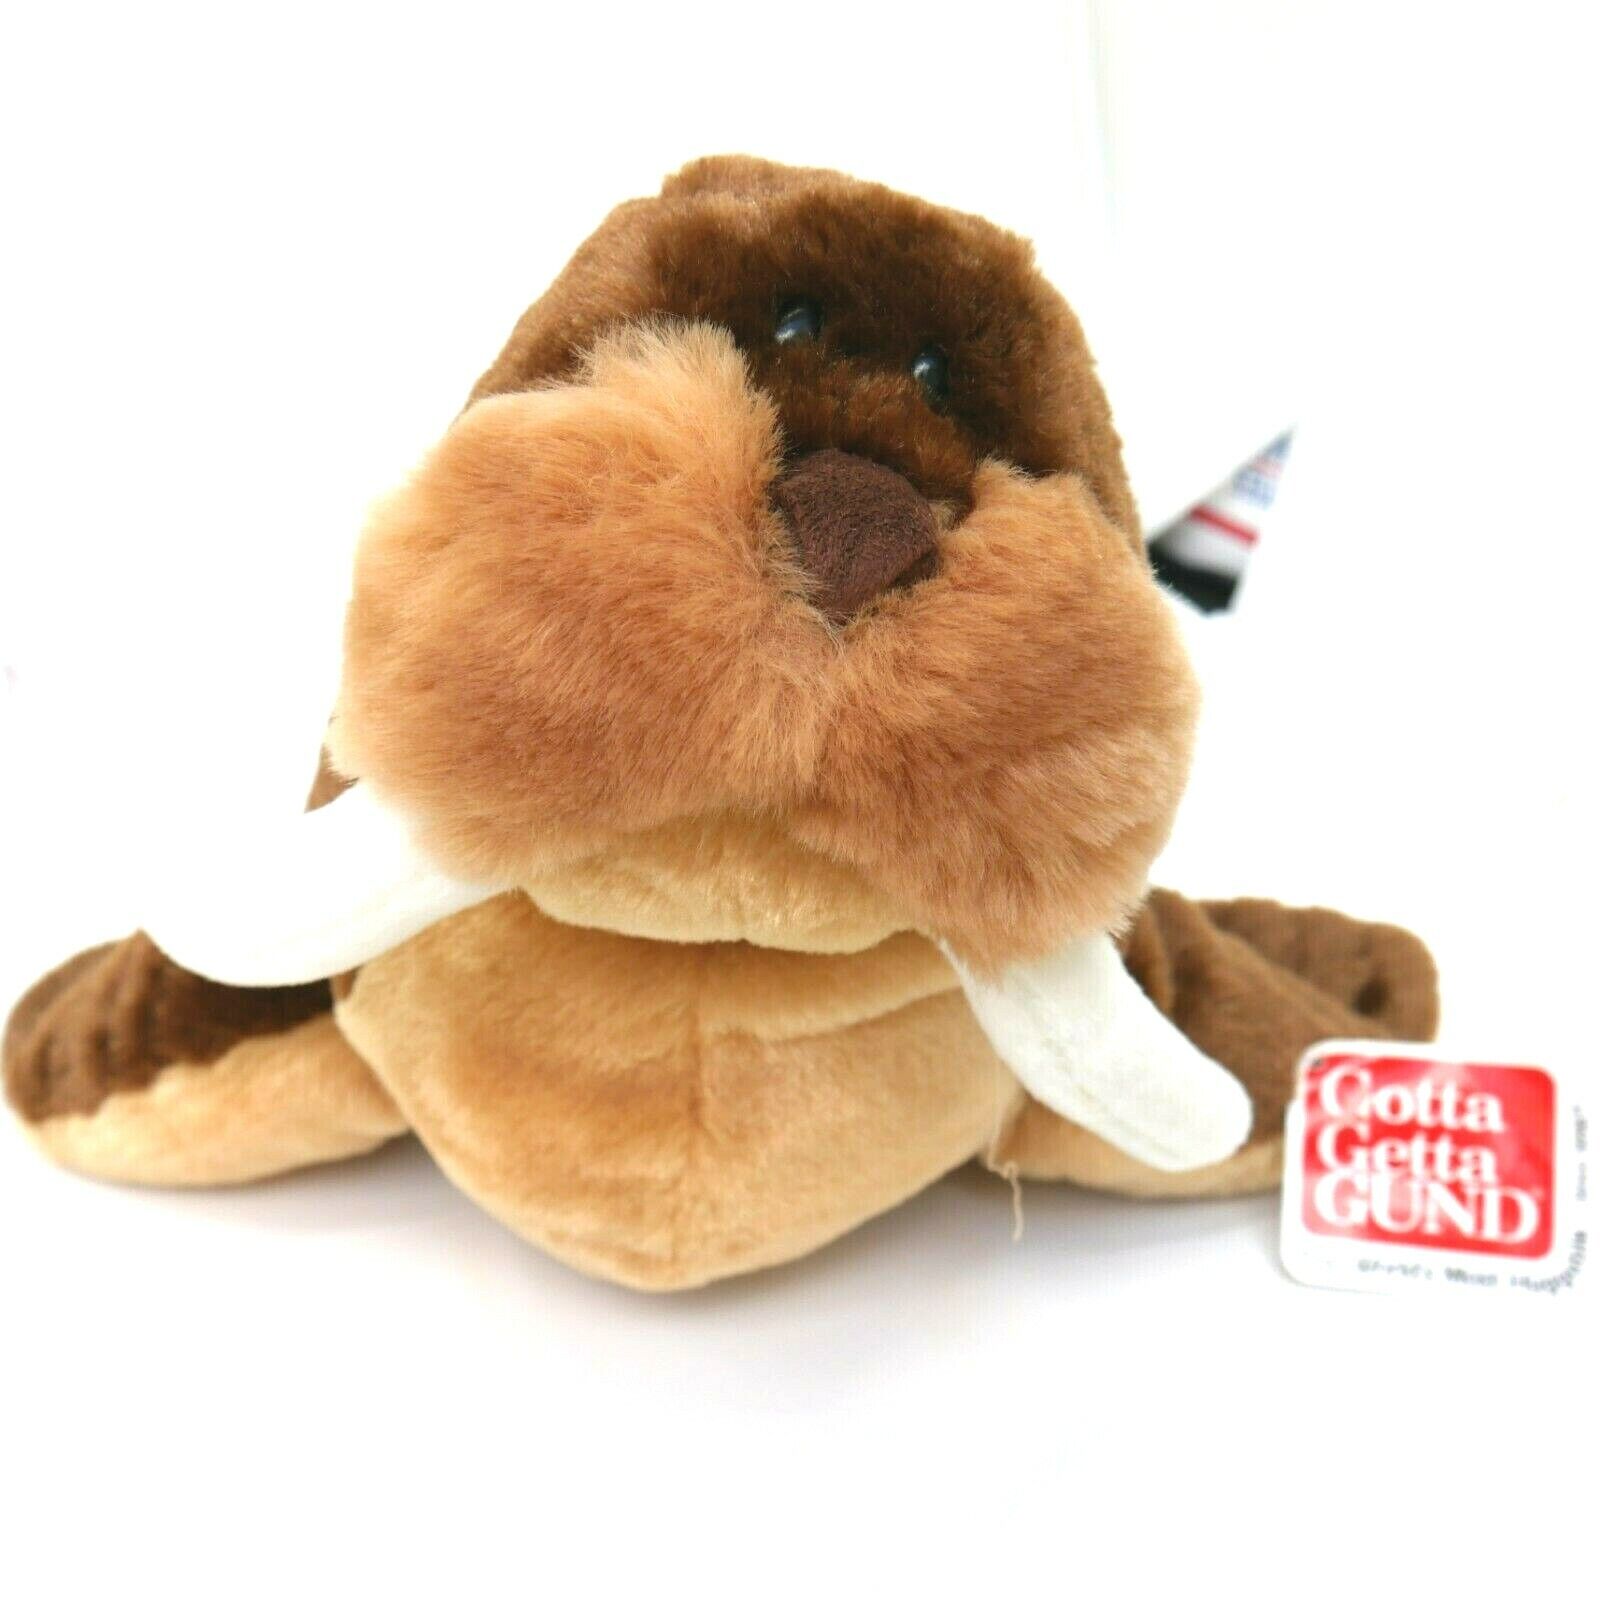 1 year warranty GUND WALTON Bargain sale WALRUS w tag brown animal stuffed plush